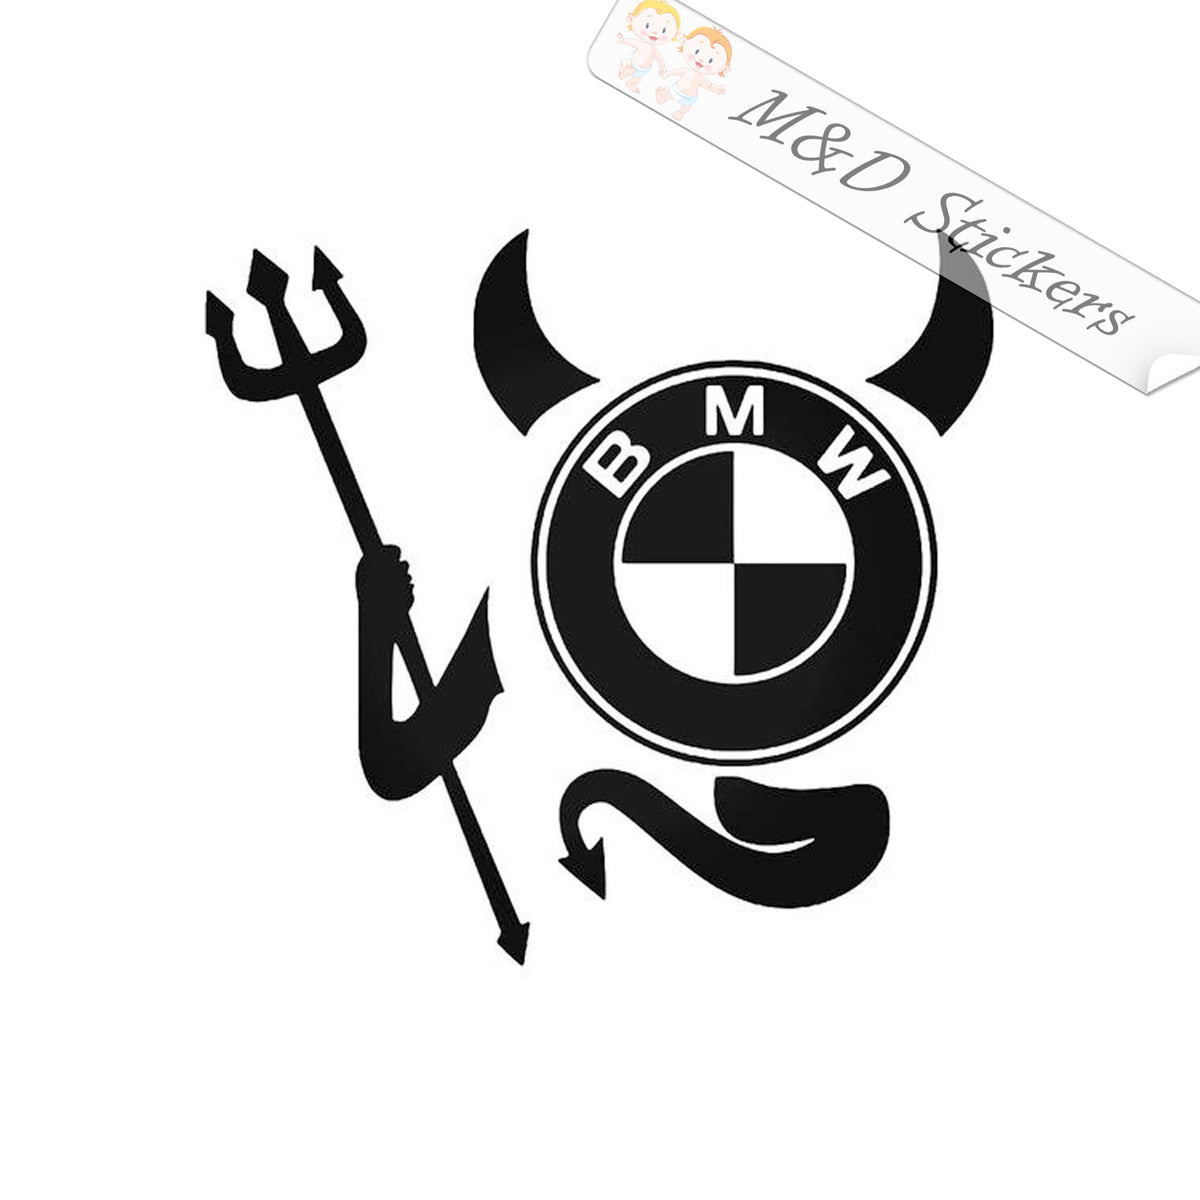 Sticker BMW LOGO